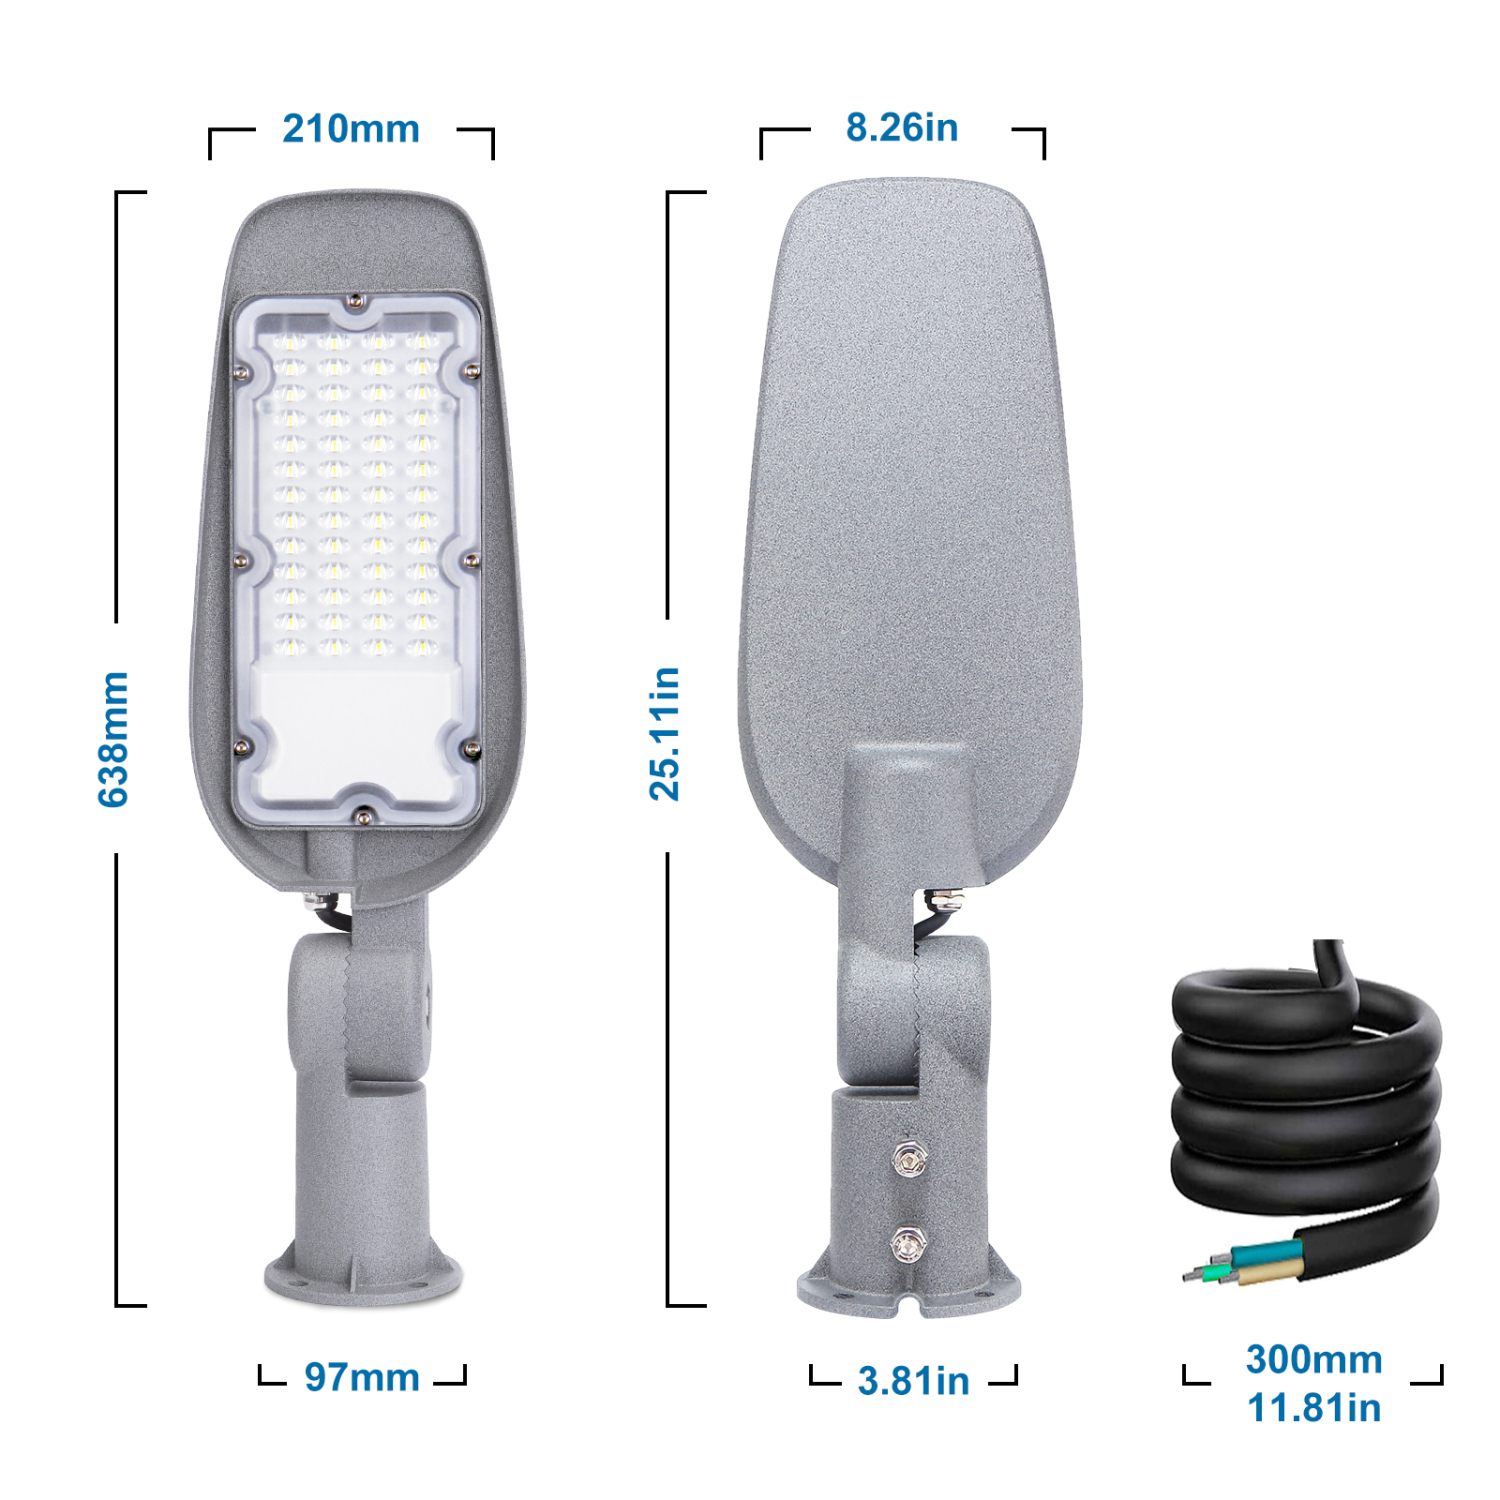 Aigostar 150W Luce stradale a LED, 15000LM luci LED per esterni 6500K IP65 impermeabile IK07 LED per parcheggio luce per strada scuola, parcheggio, campo da basket, cortile, piazza